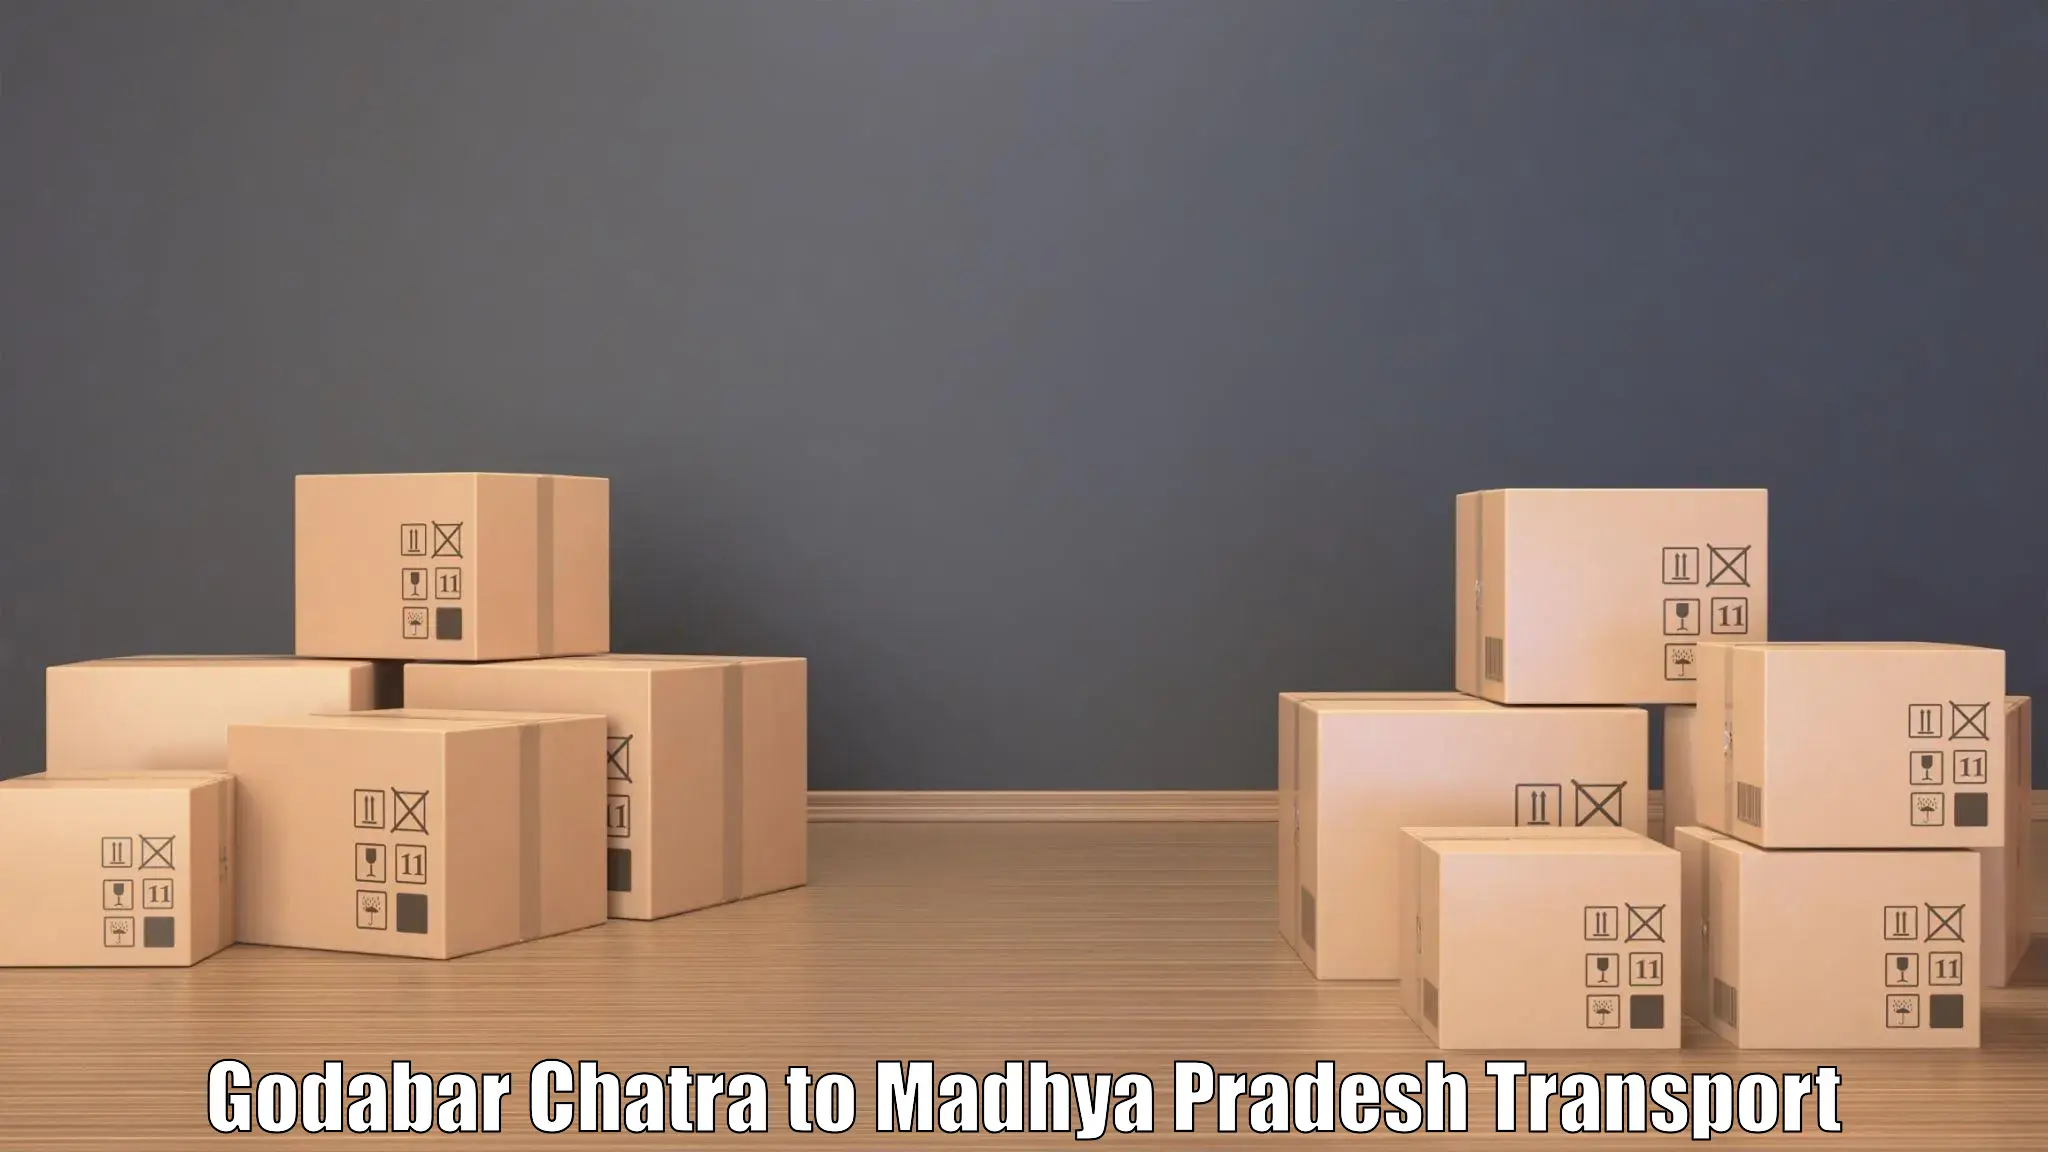 Bike shipping service Godabar Chatra to Madhya Pradesh